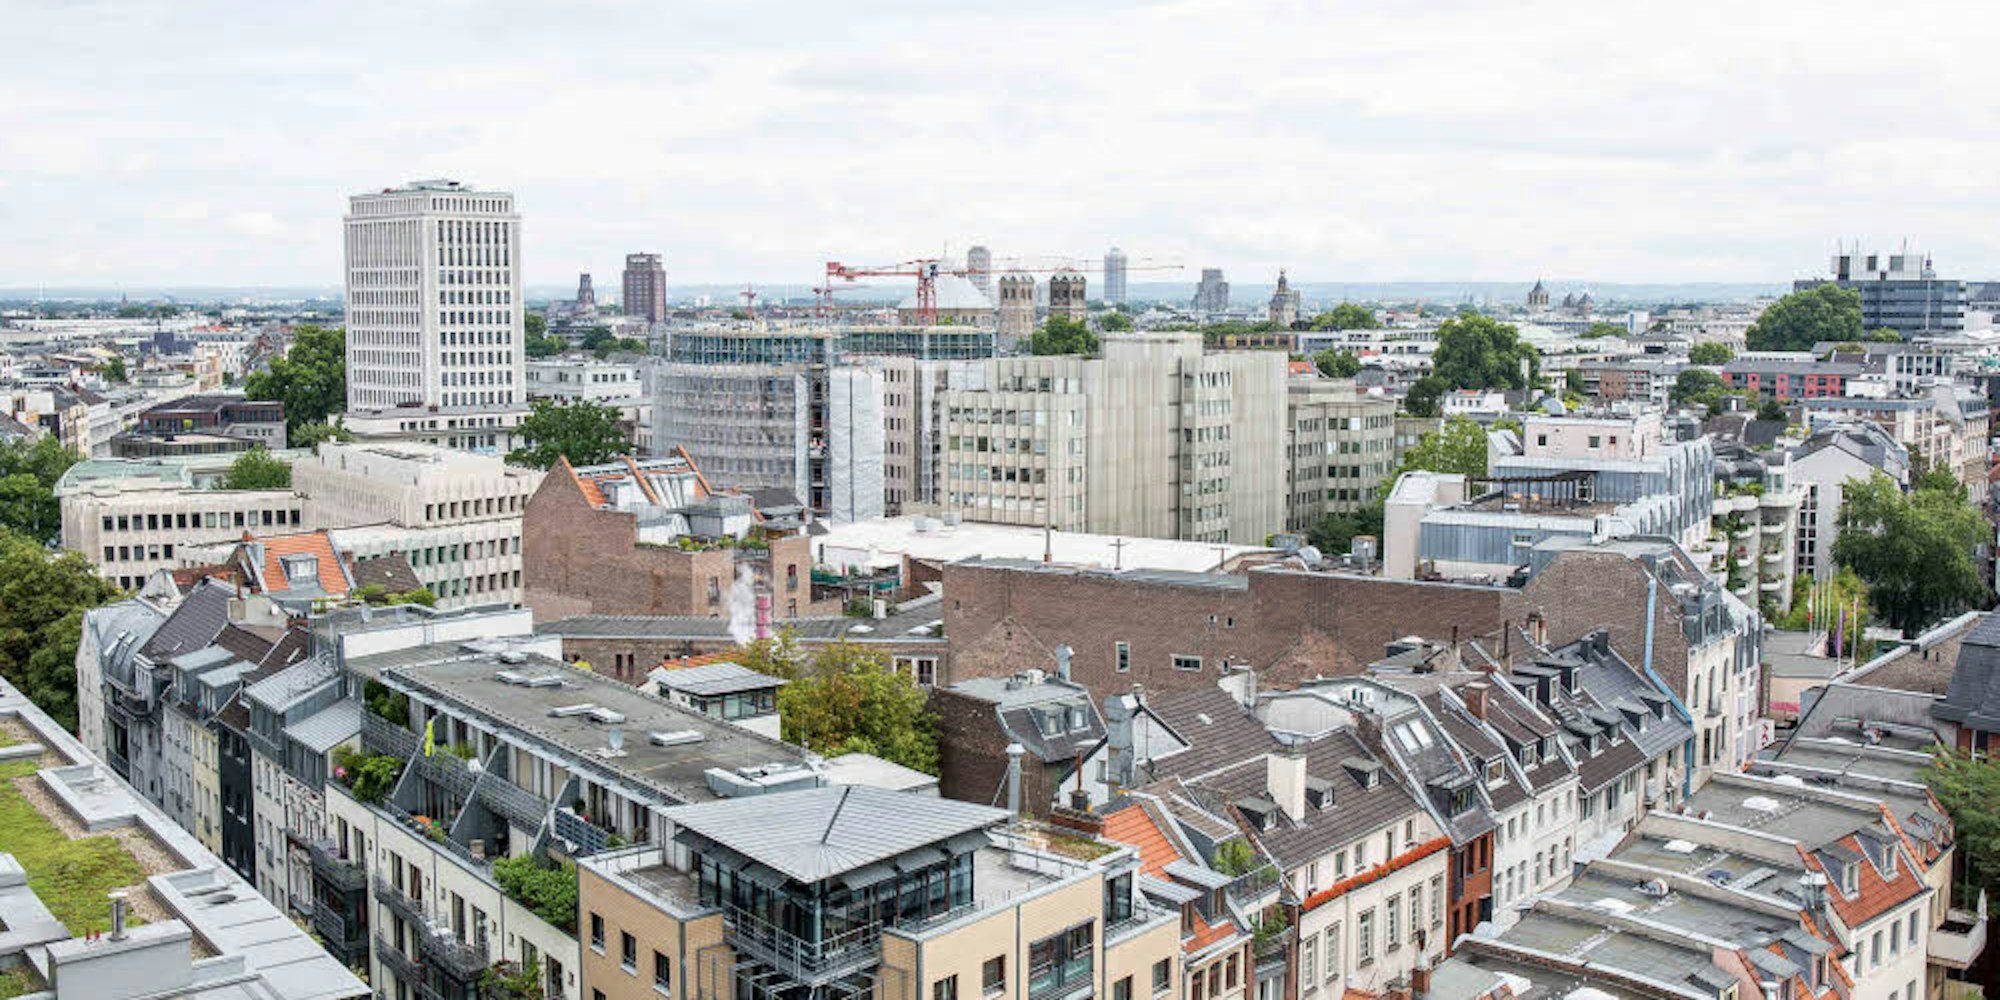 Mitten in der Stadt: Blick vom Hohenzollernring über die Friesenstraße (unten im Bild) auf das Gerling-Quartier samt Hochhaus (links) und neuem Hotel, über dem sich der Baukran noch dreht.